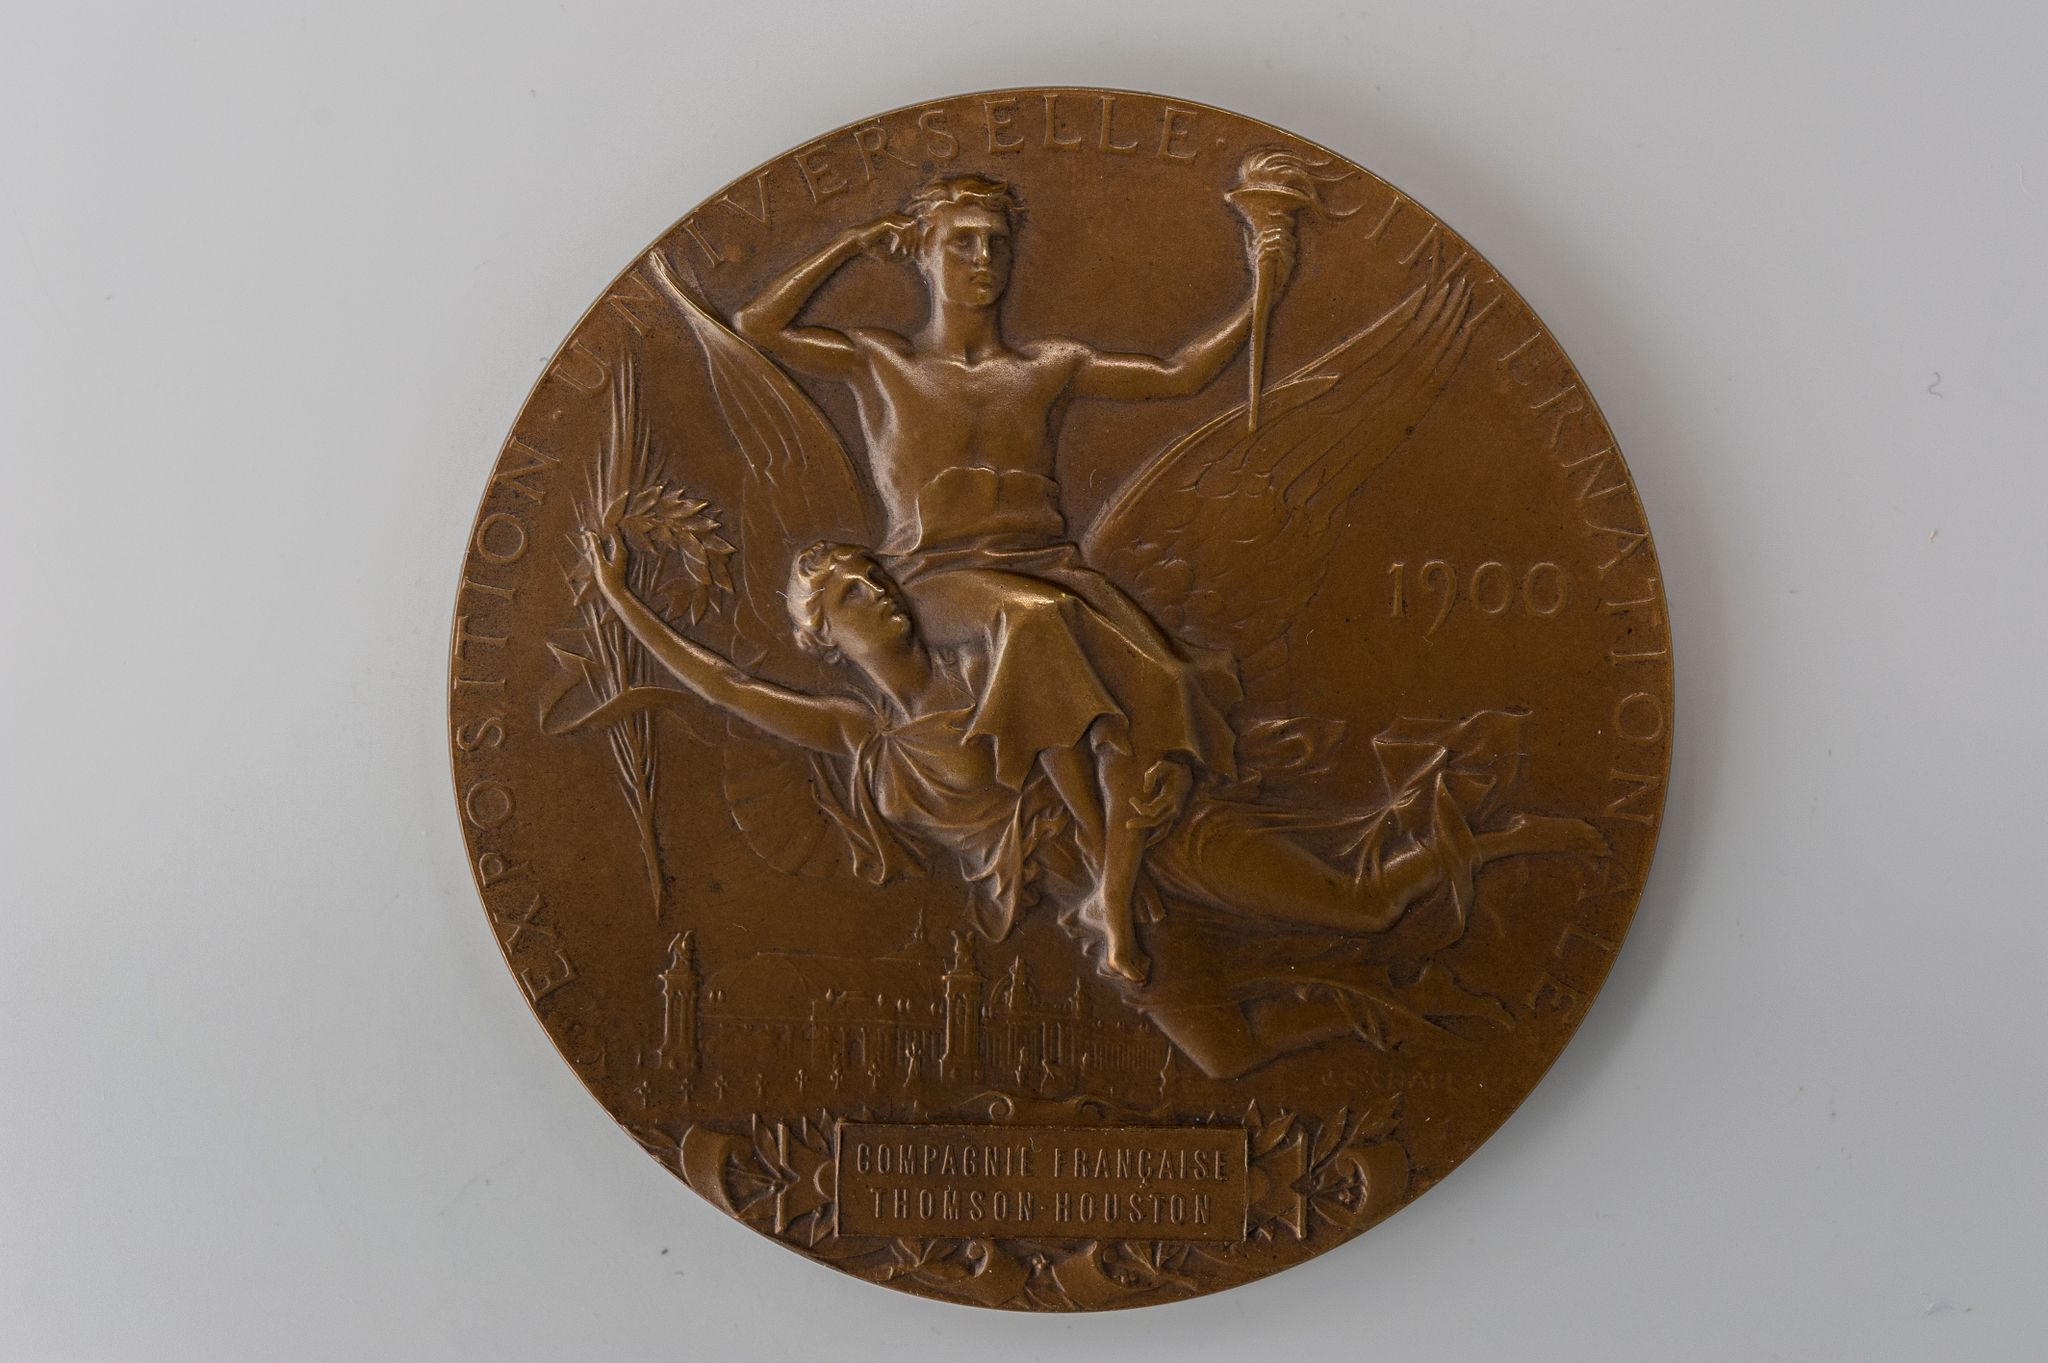 Récompense de l'Exposition universelle de 1900 offerte à la compagnie Thomson-Houston